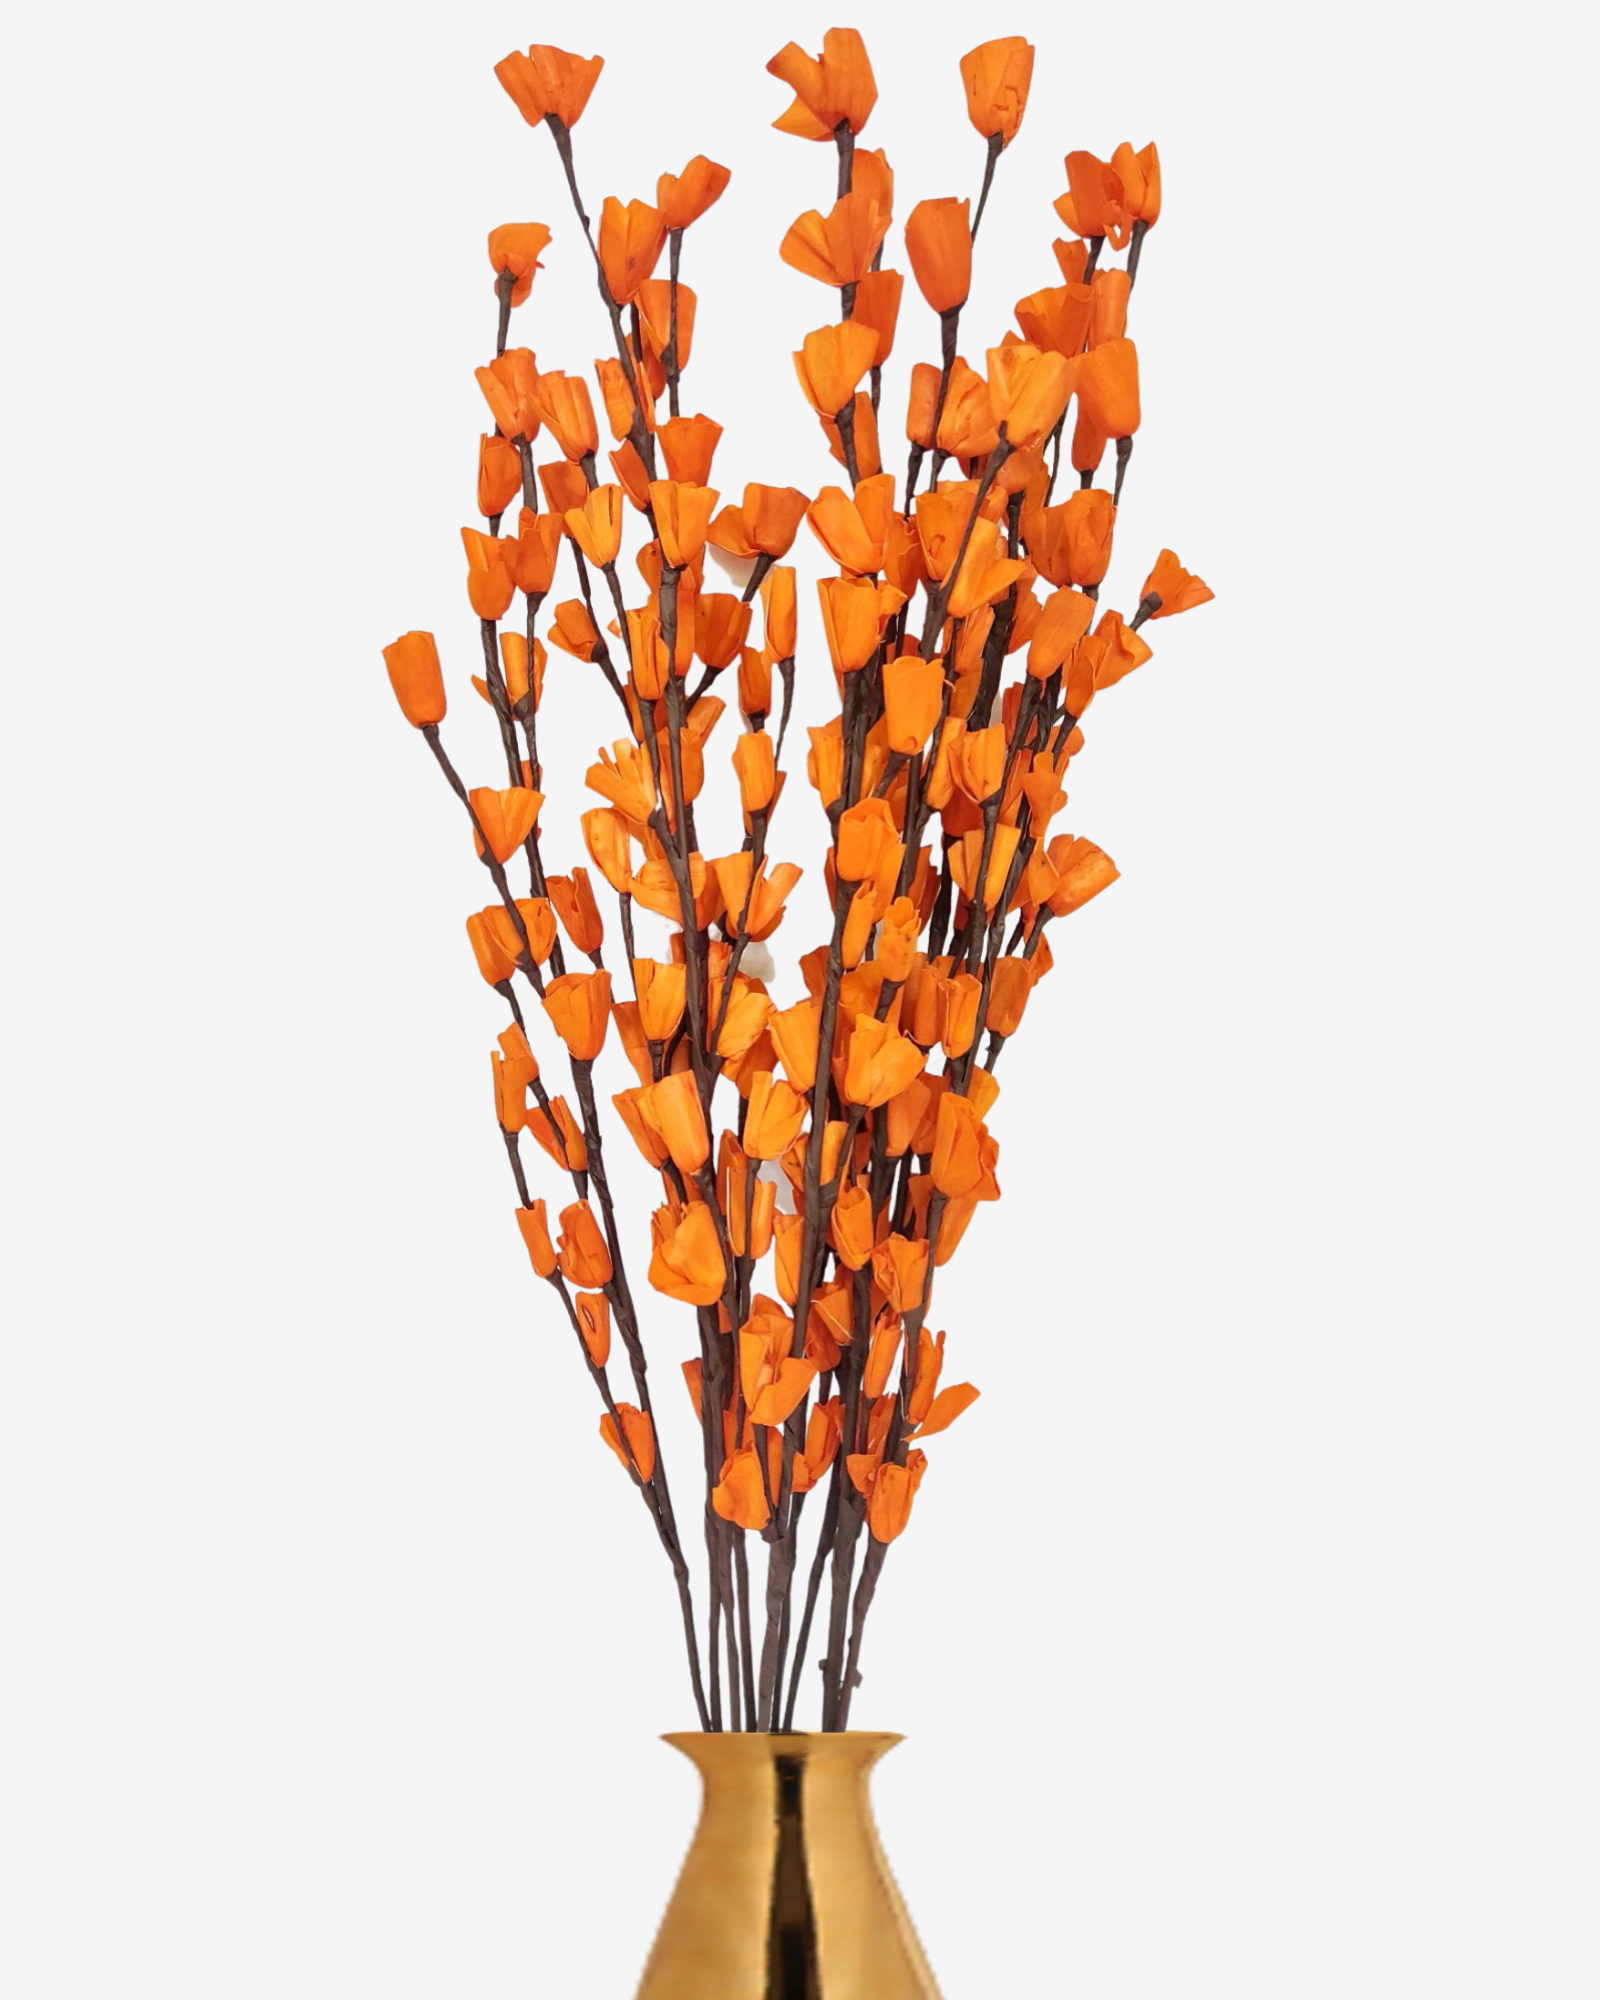 Homemade Sola Lily Flower Stick Joynagar Handicraft Artificial Flowers color_orange